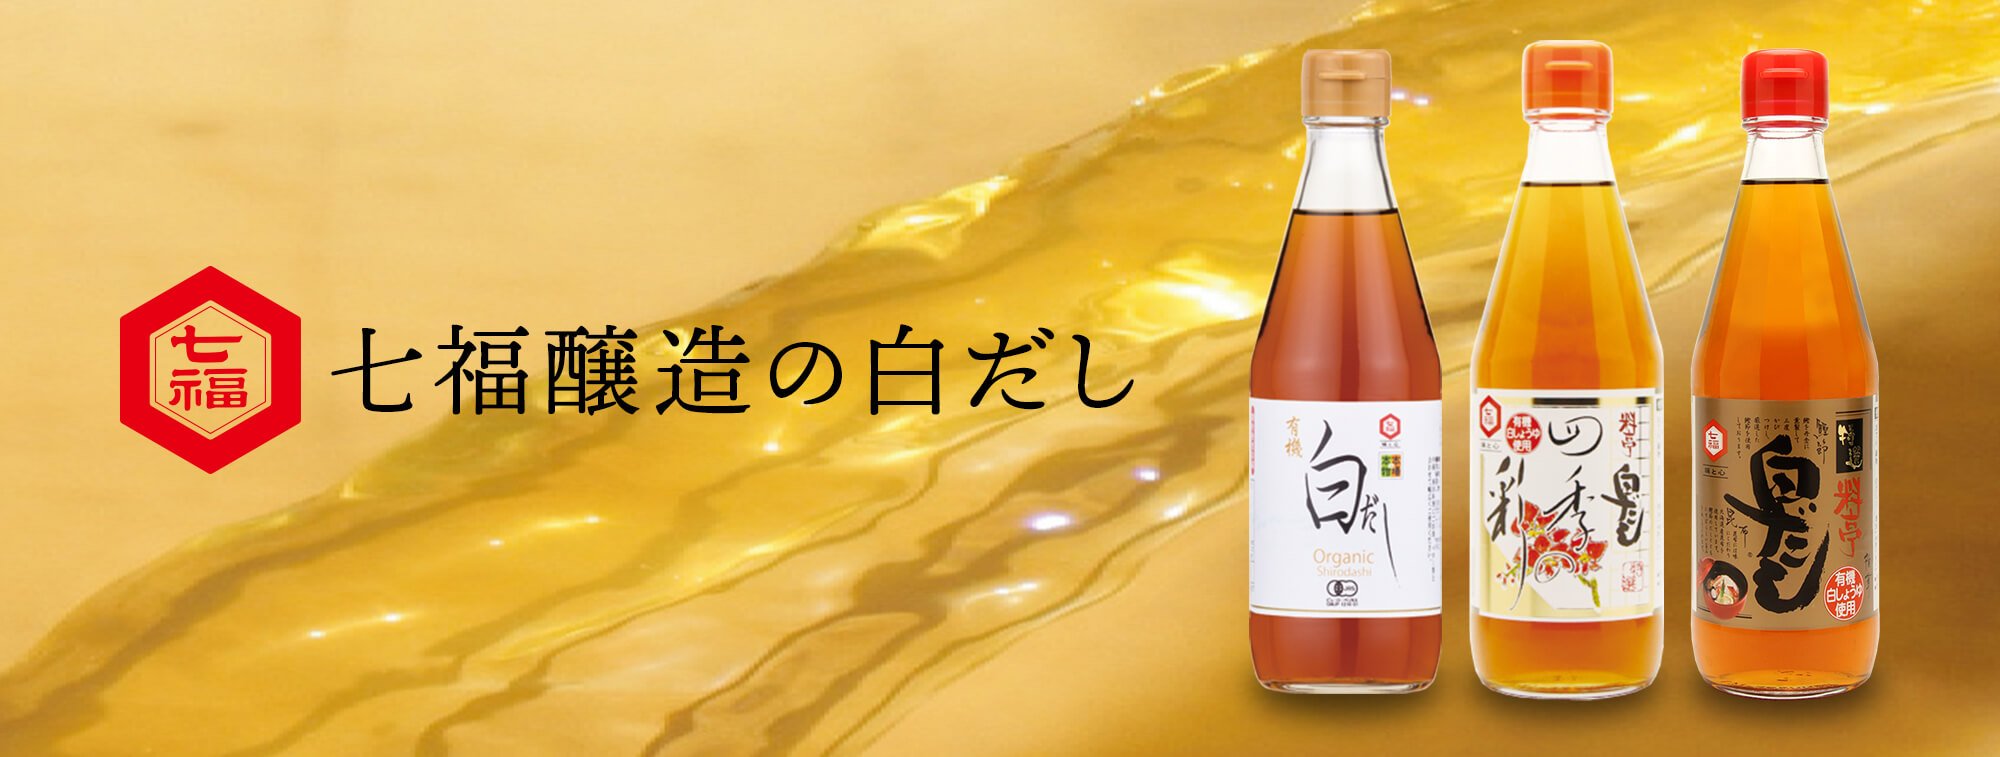 七福醸造醸造が、1978年、日本で初めてつくった「白だし」。日本で唯一の有機白醤油と枕崎産本枯節を使った万能調味料。七福醸造の元祖料亭白だし